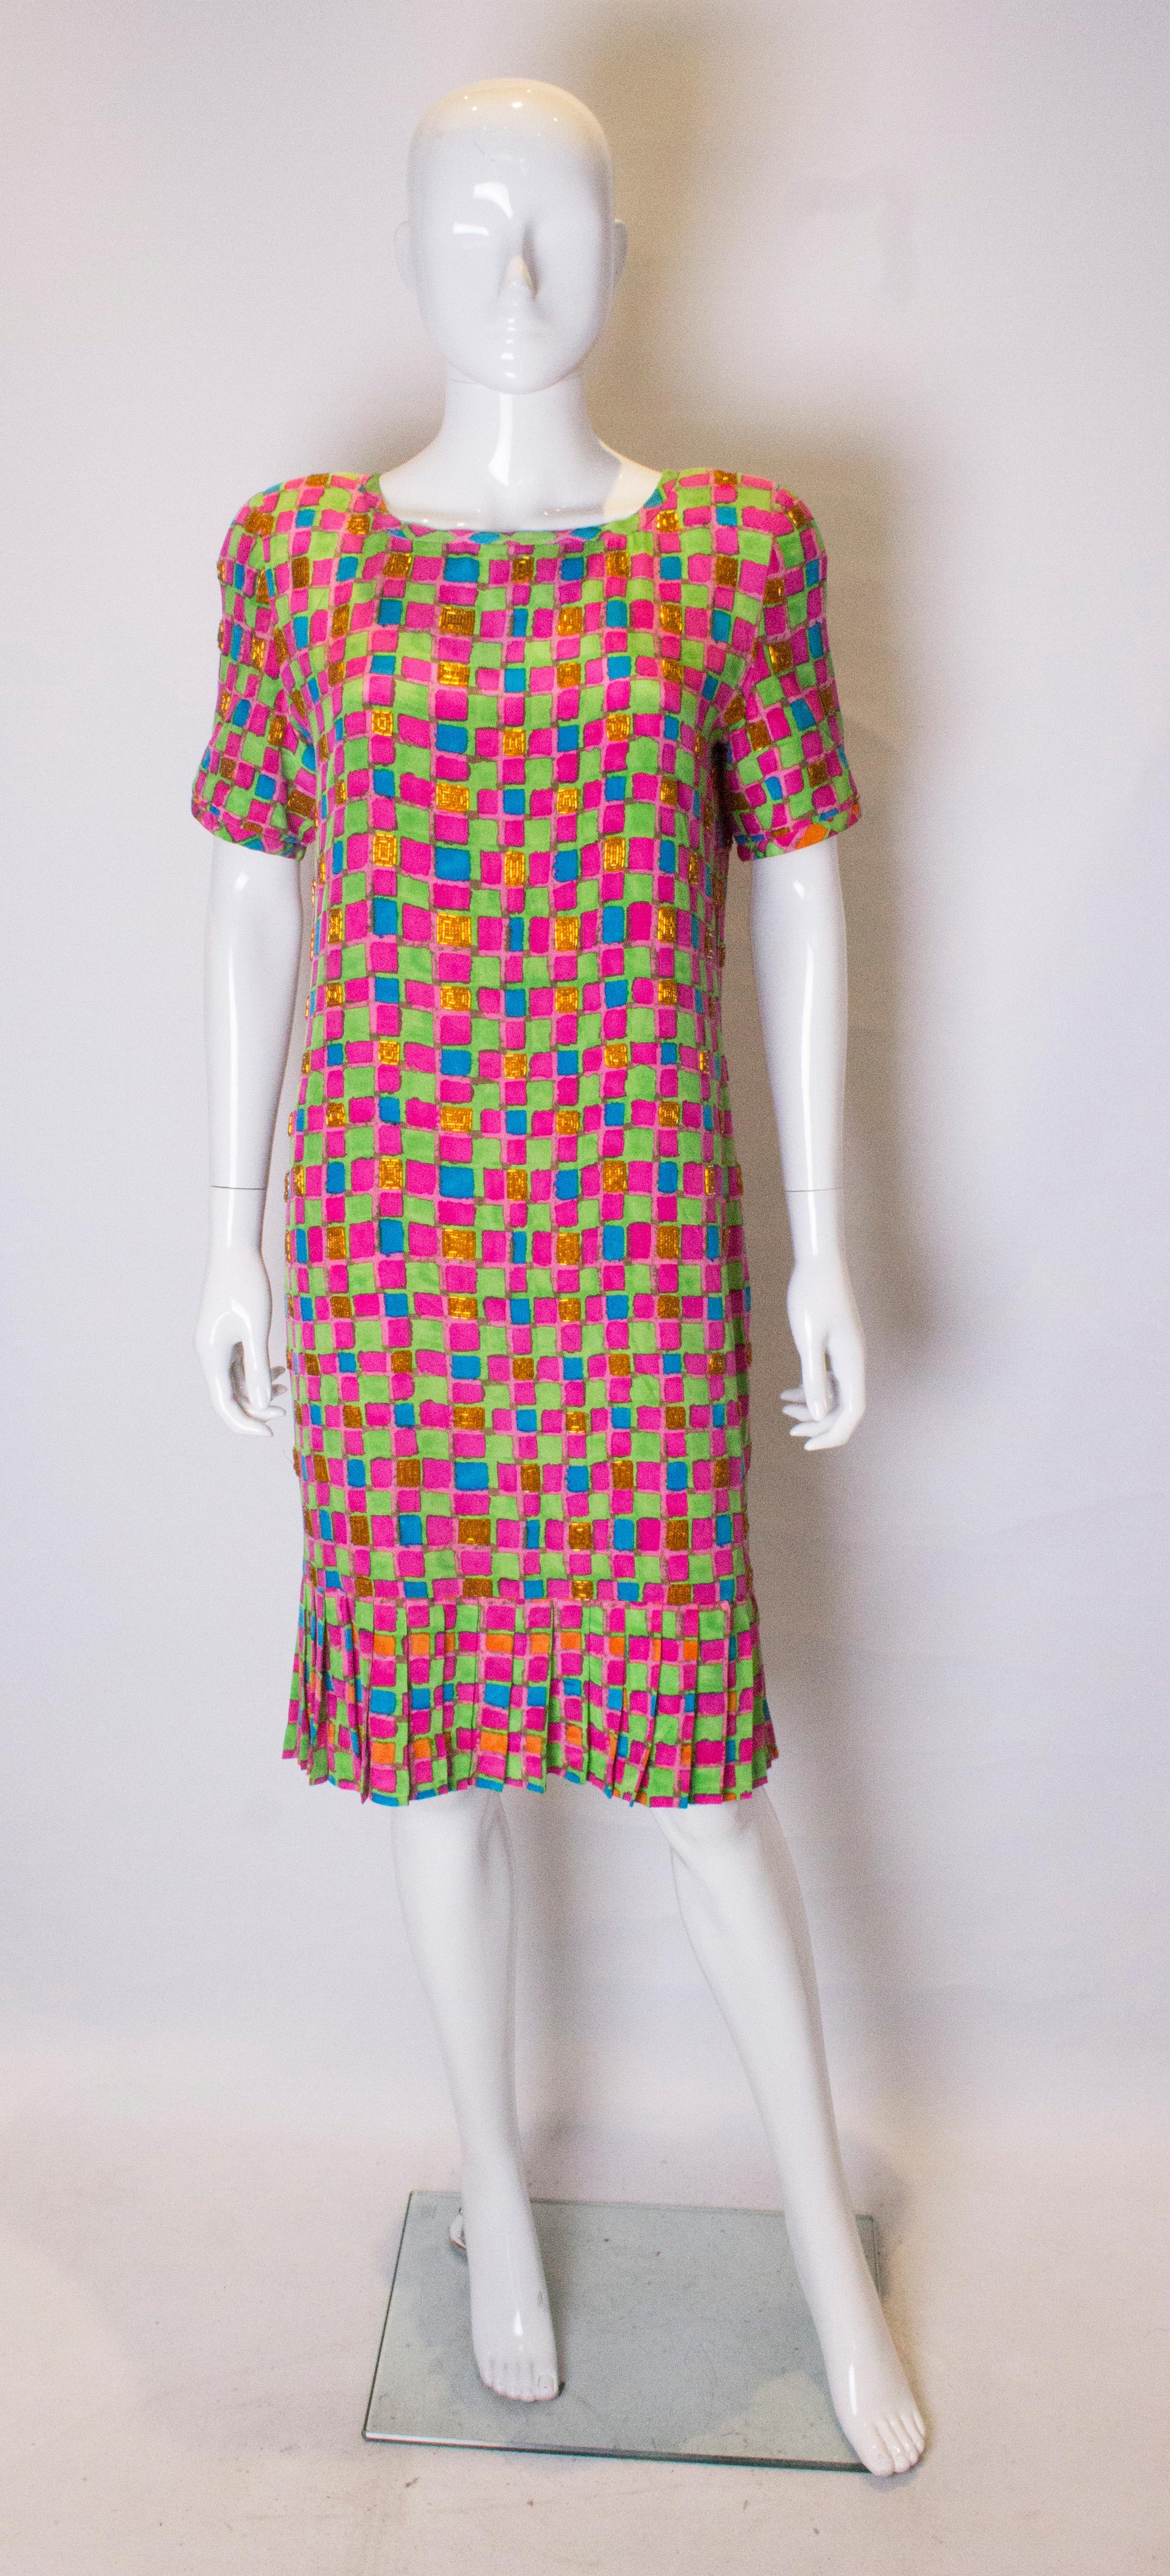 Ein schickes und farbenfrohes Kleid von Bill Blass. Das Kleid ist in einem farbenfrohen Druck von rosa, blau, grün und orange mit Perlendekoration. Es hat eine niedrige Taille und Falten am Saum. Sie ist vollständig gefüttert und hat einen zentralen